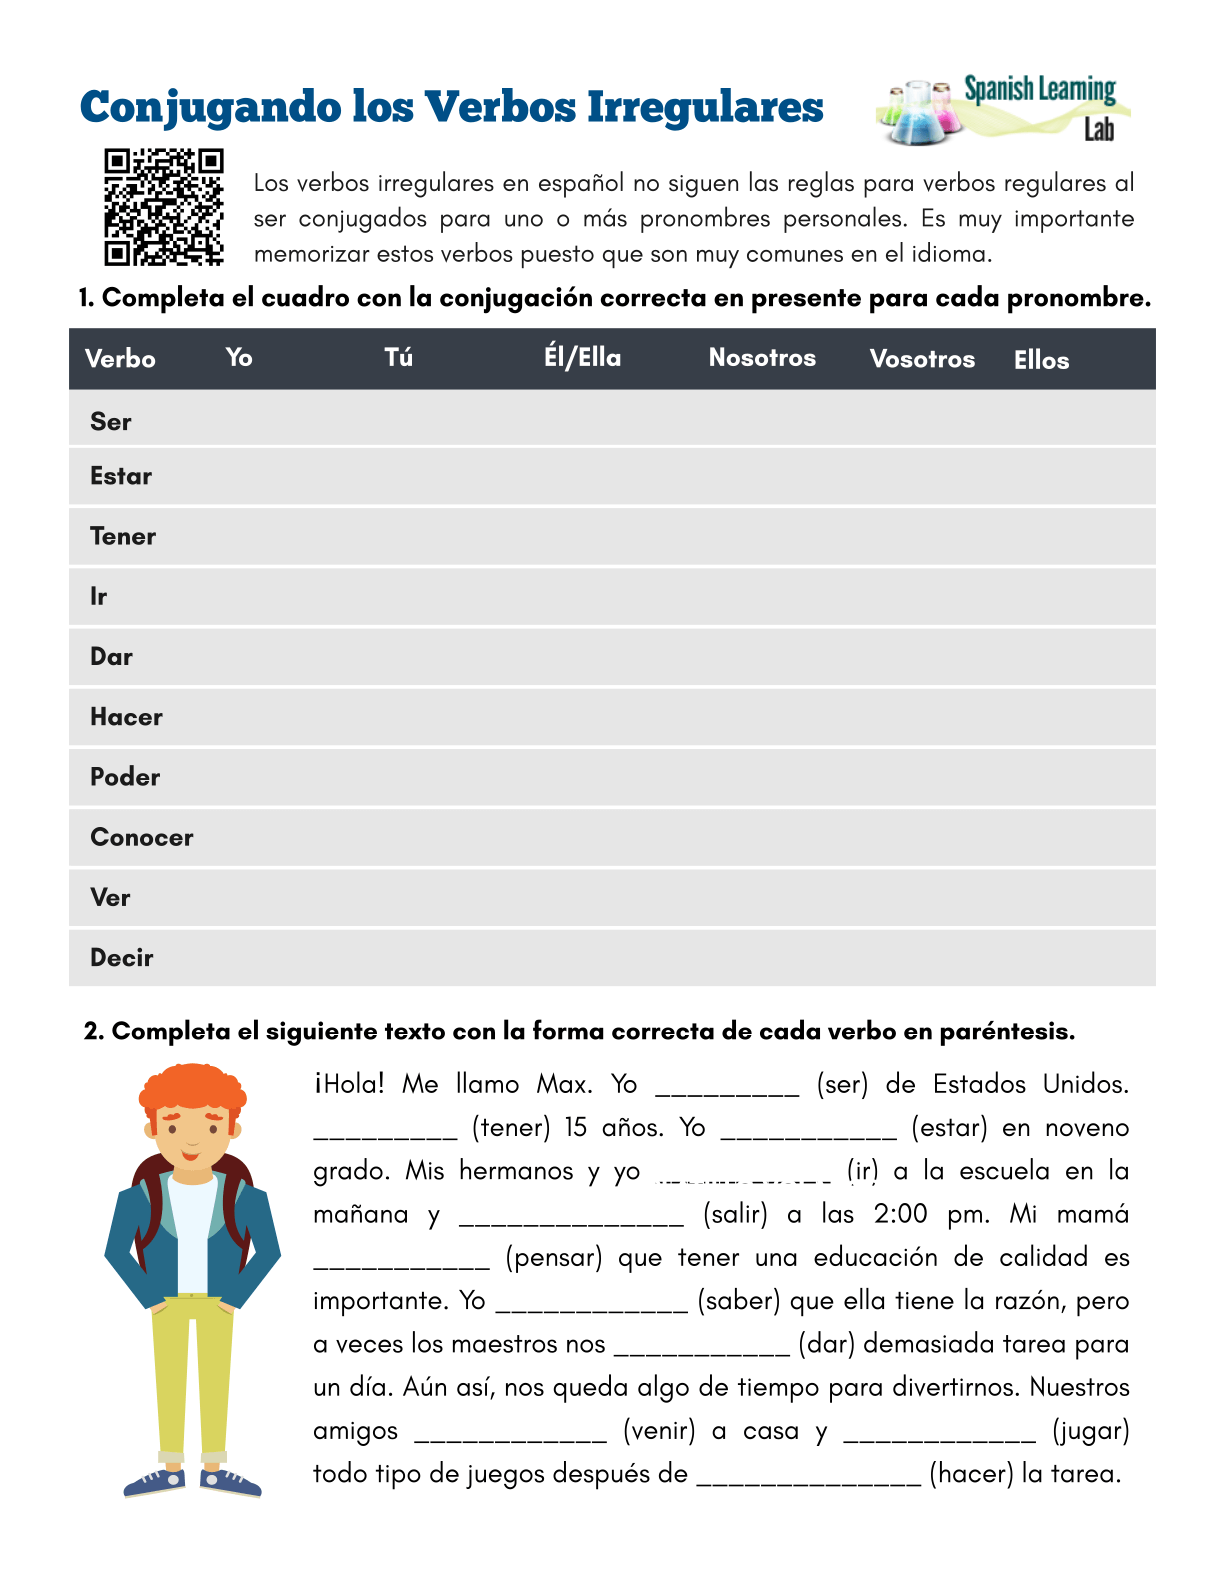 conjugando-los-verbos-irregulares-en-espa-ol-ejercicios-en-pdf-spanish-learning-lab